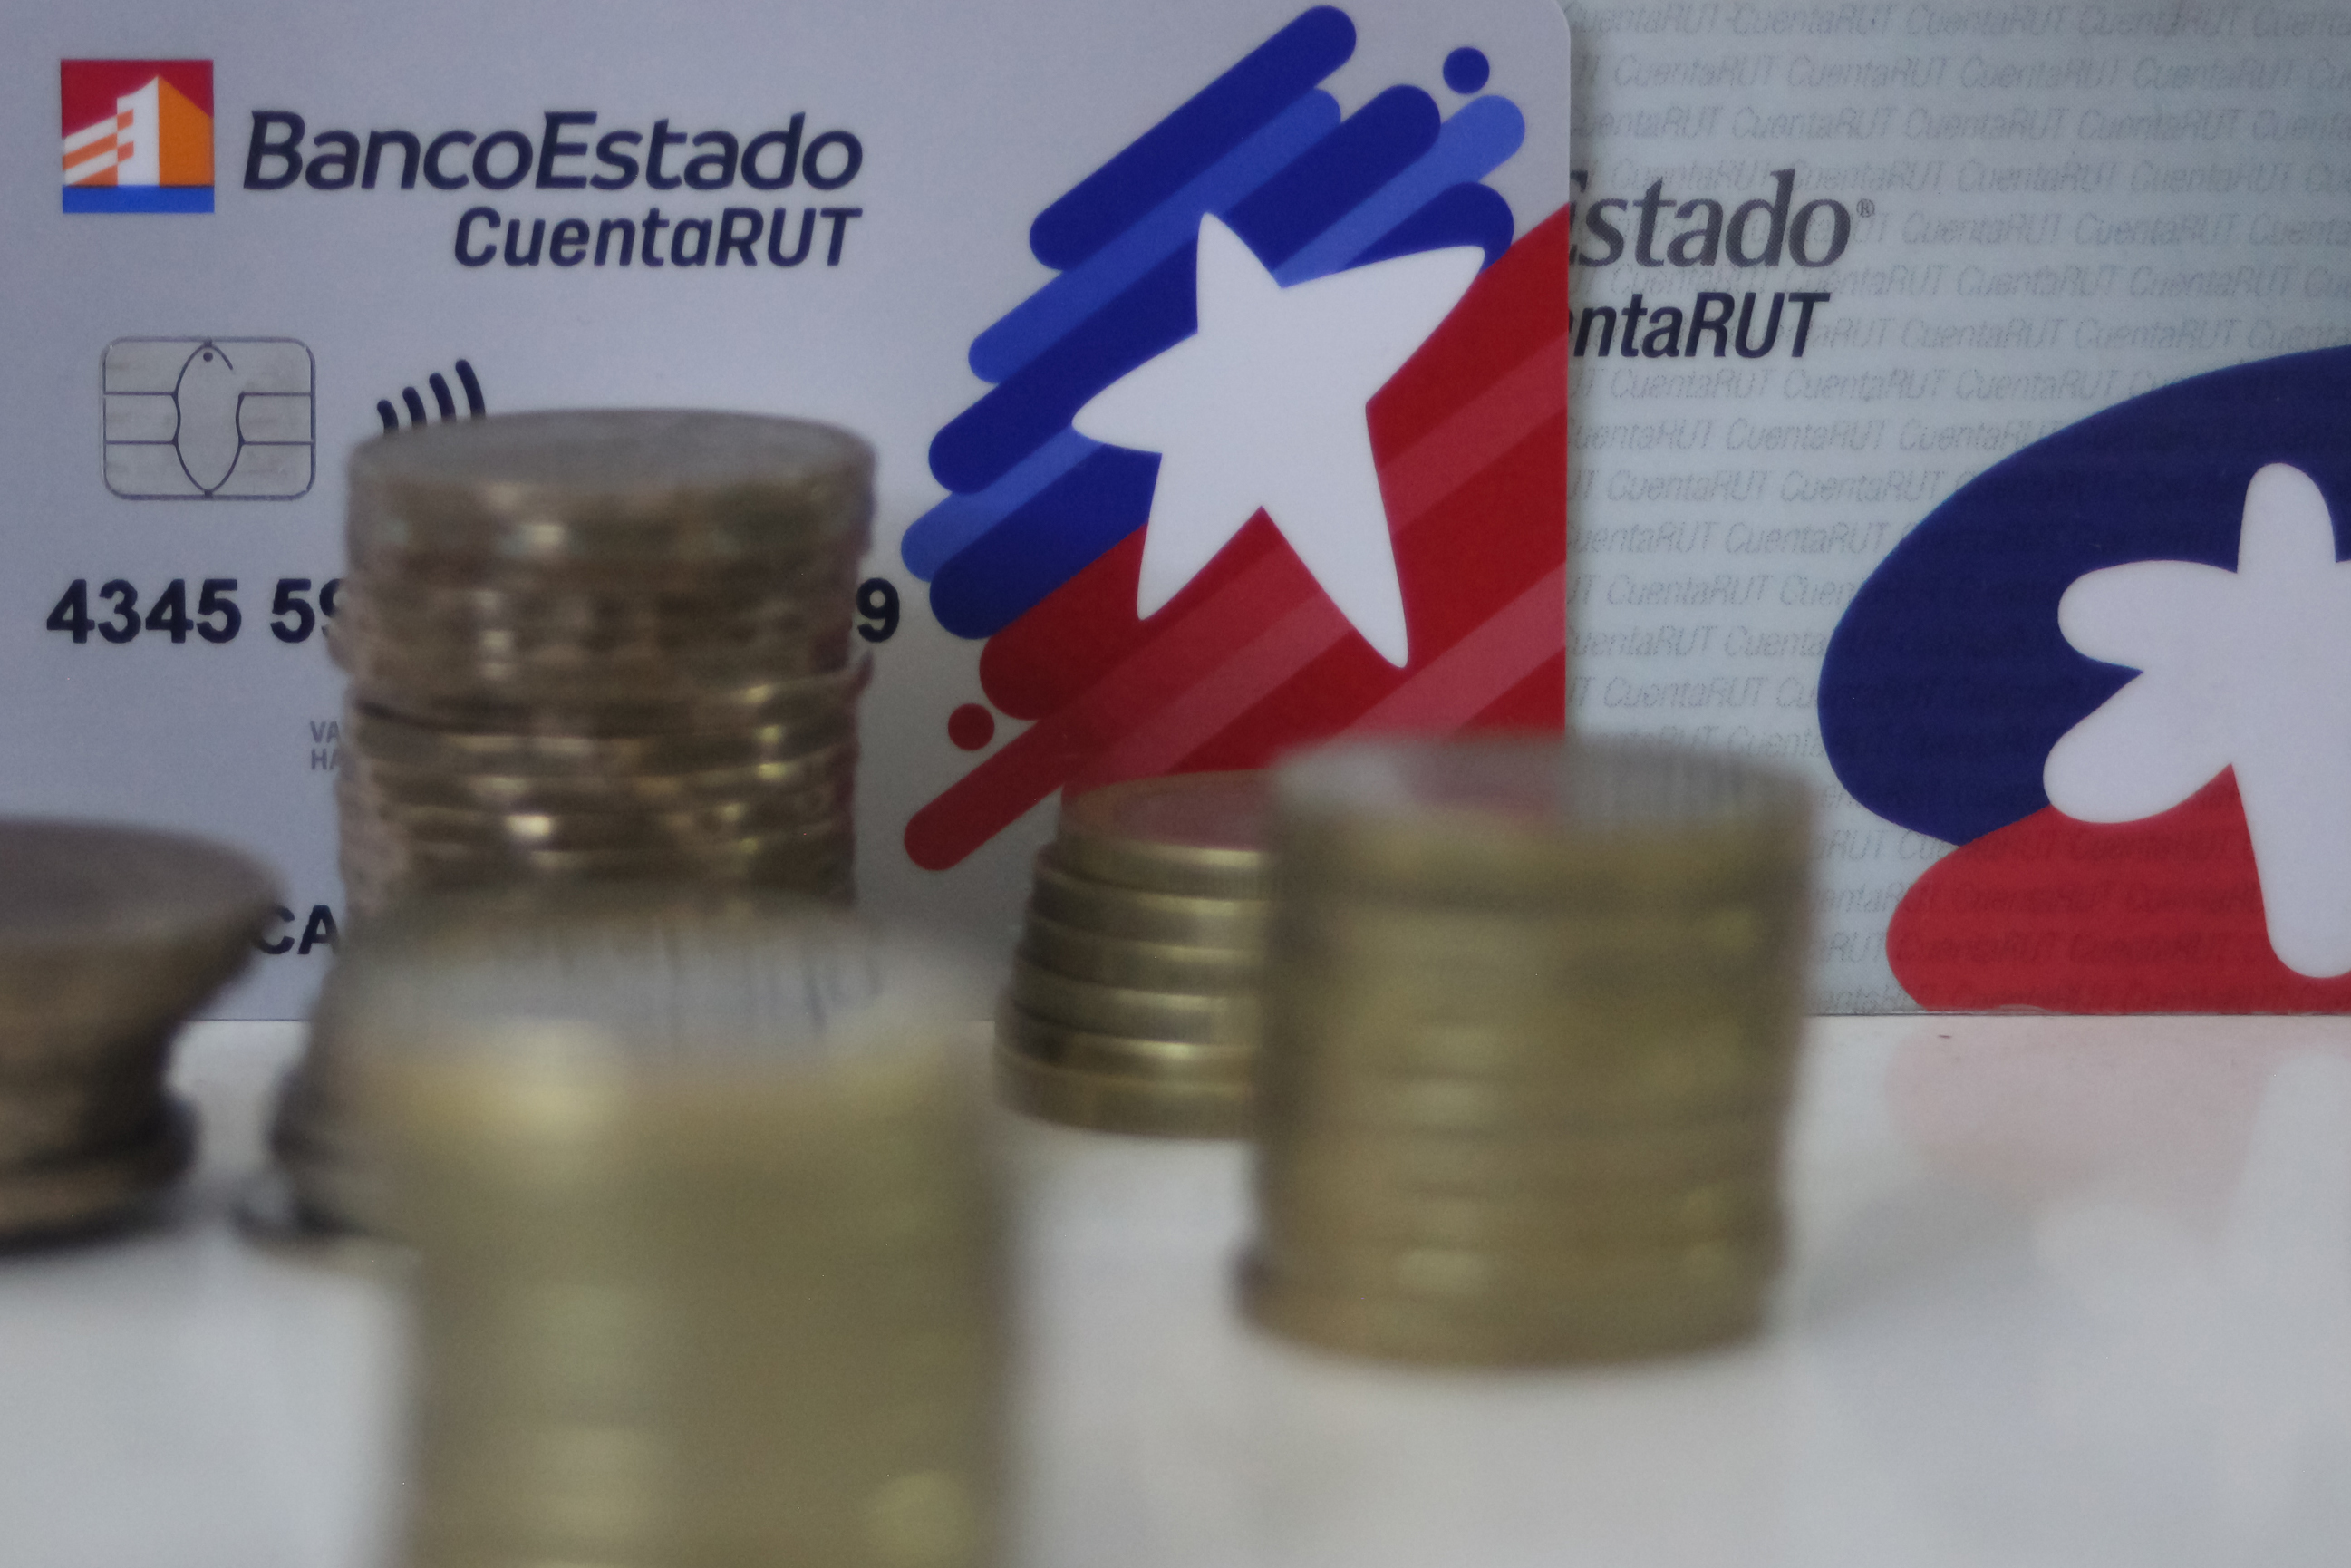 Tarjetas de débito de BancoEstado de Chile y monedas de peso chileno